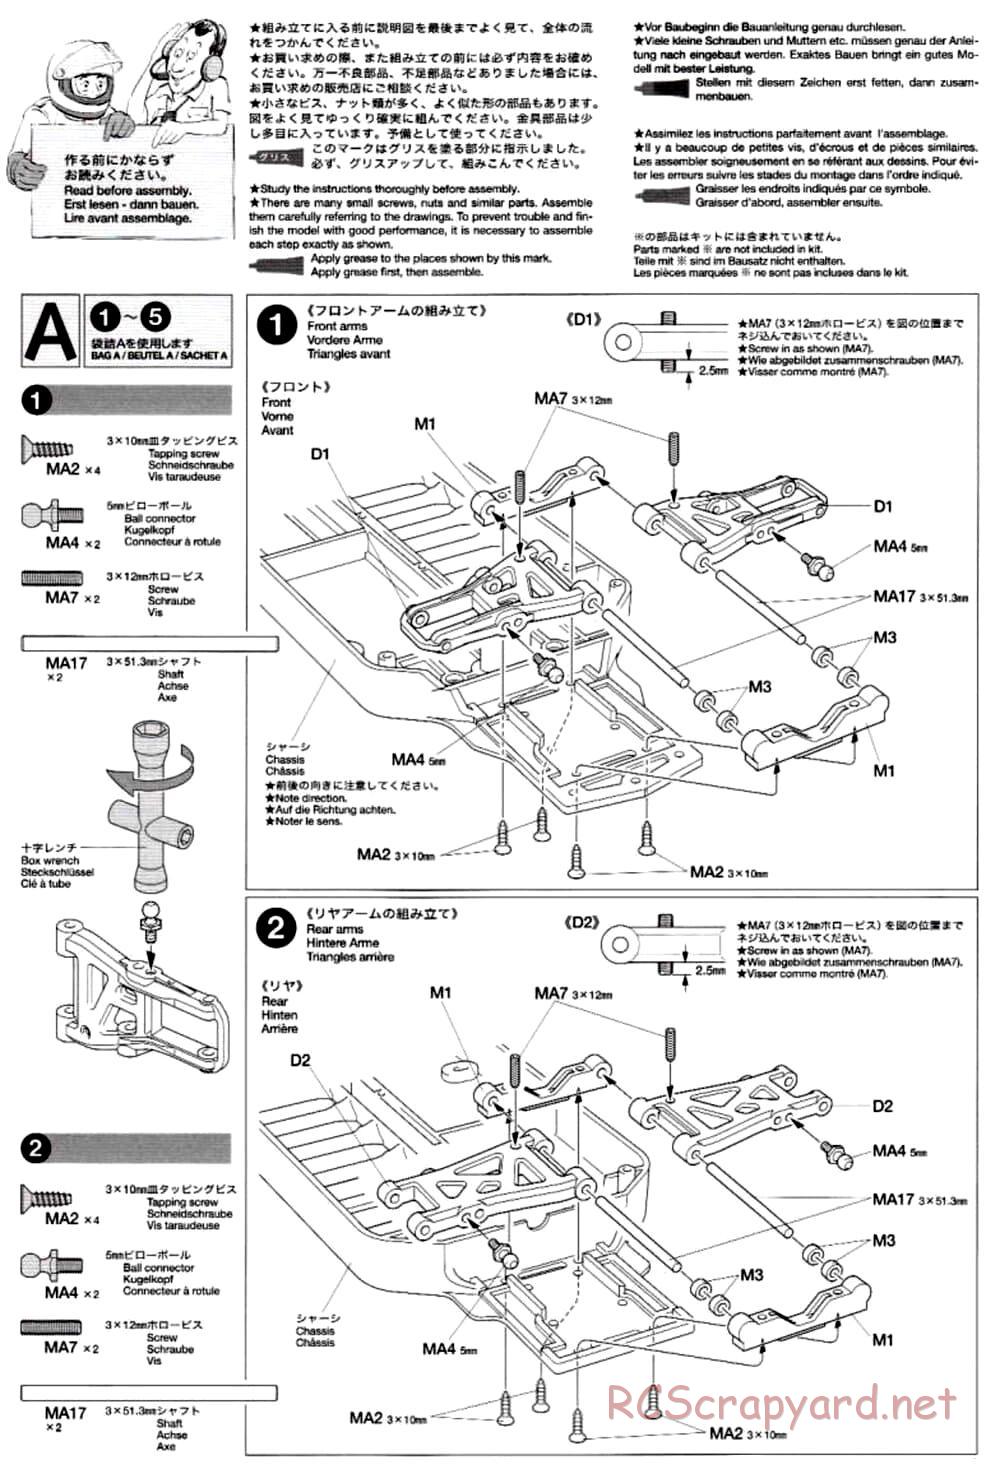 Tamiya - TB-02 Chassis - Manual - Page 4